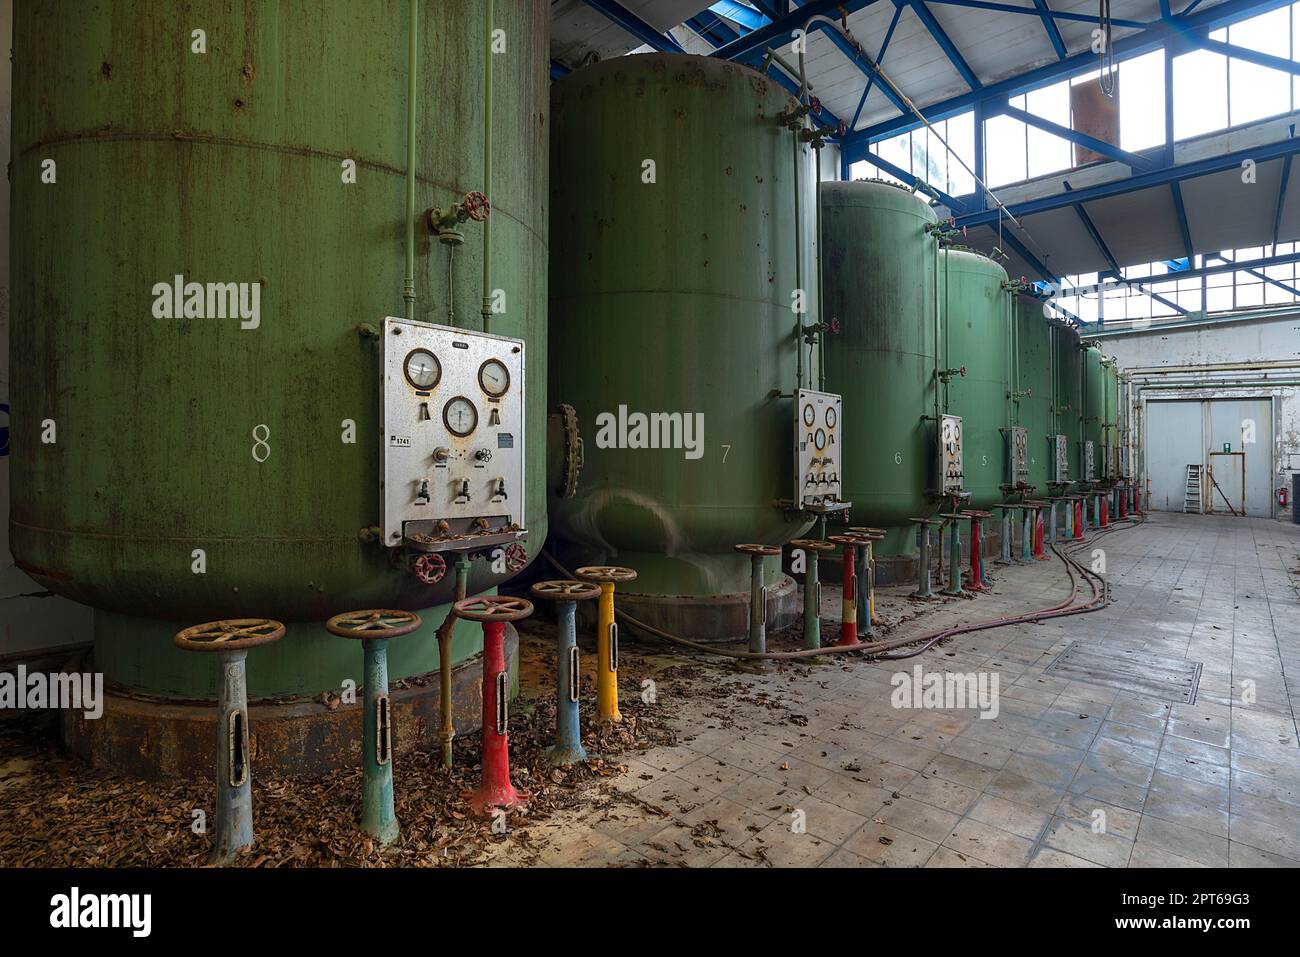 Serbatoi d'acqua dell'impianto di depurazione dell'acqua in una ex fabbrica di carta, Lost Place, Baden-Wuerttemberg, Germania Foto Stock